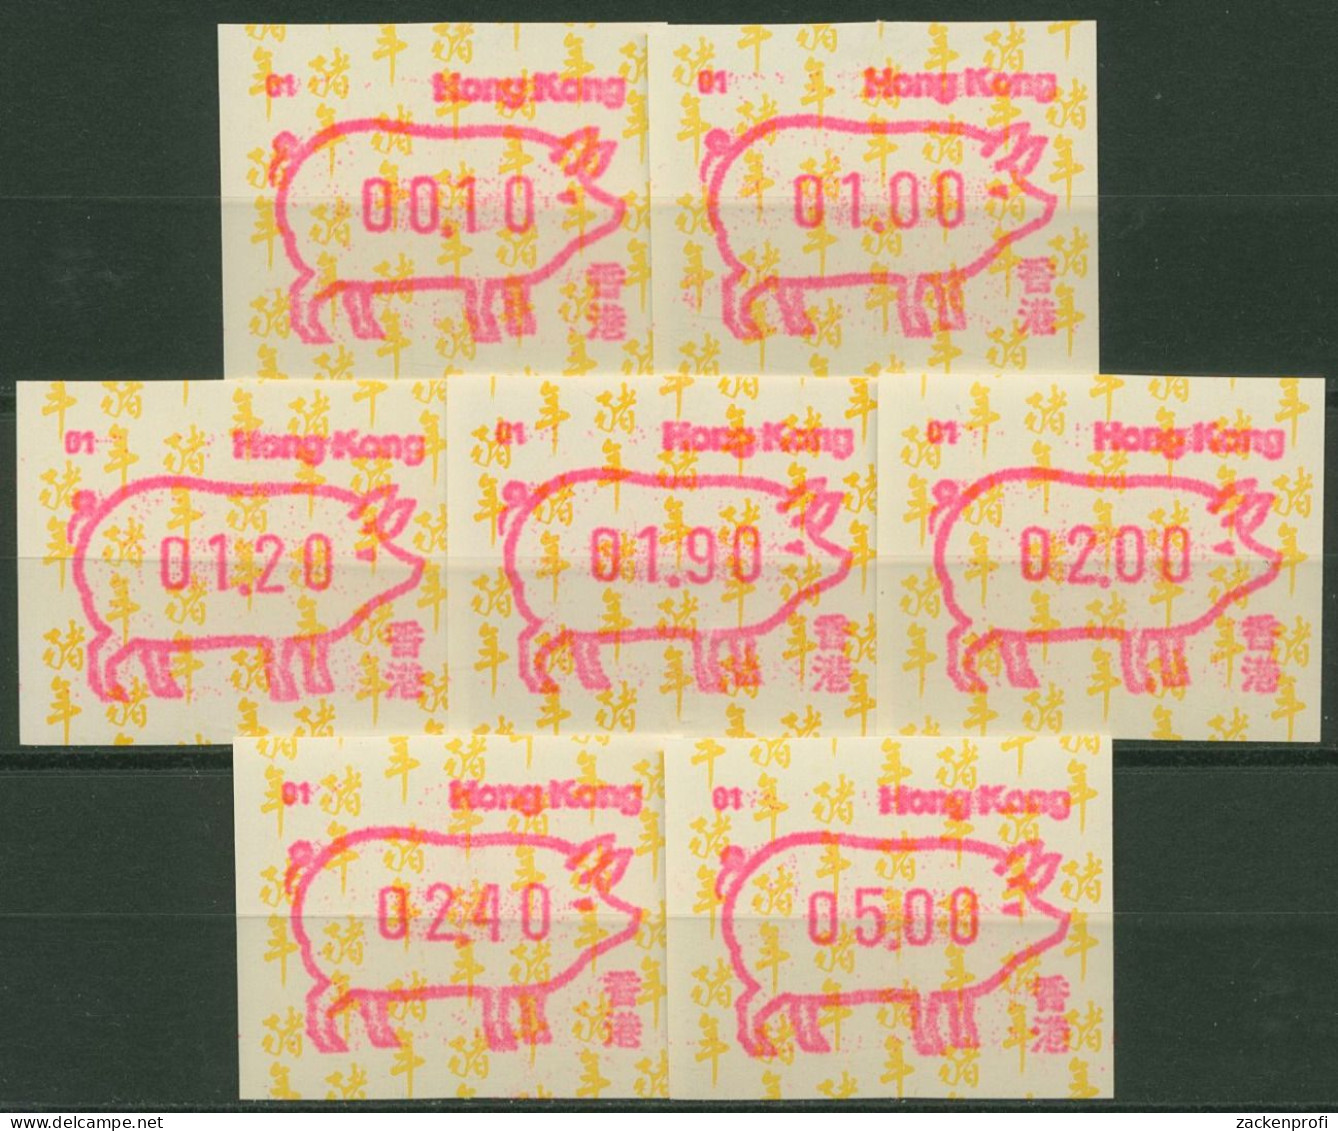 Hongkong 1995 Jahr Des Schweins Satz 7 Werte ATM 10.1 Automat 01 Postfrisch - Distributors